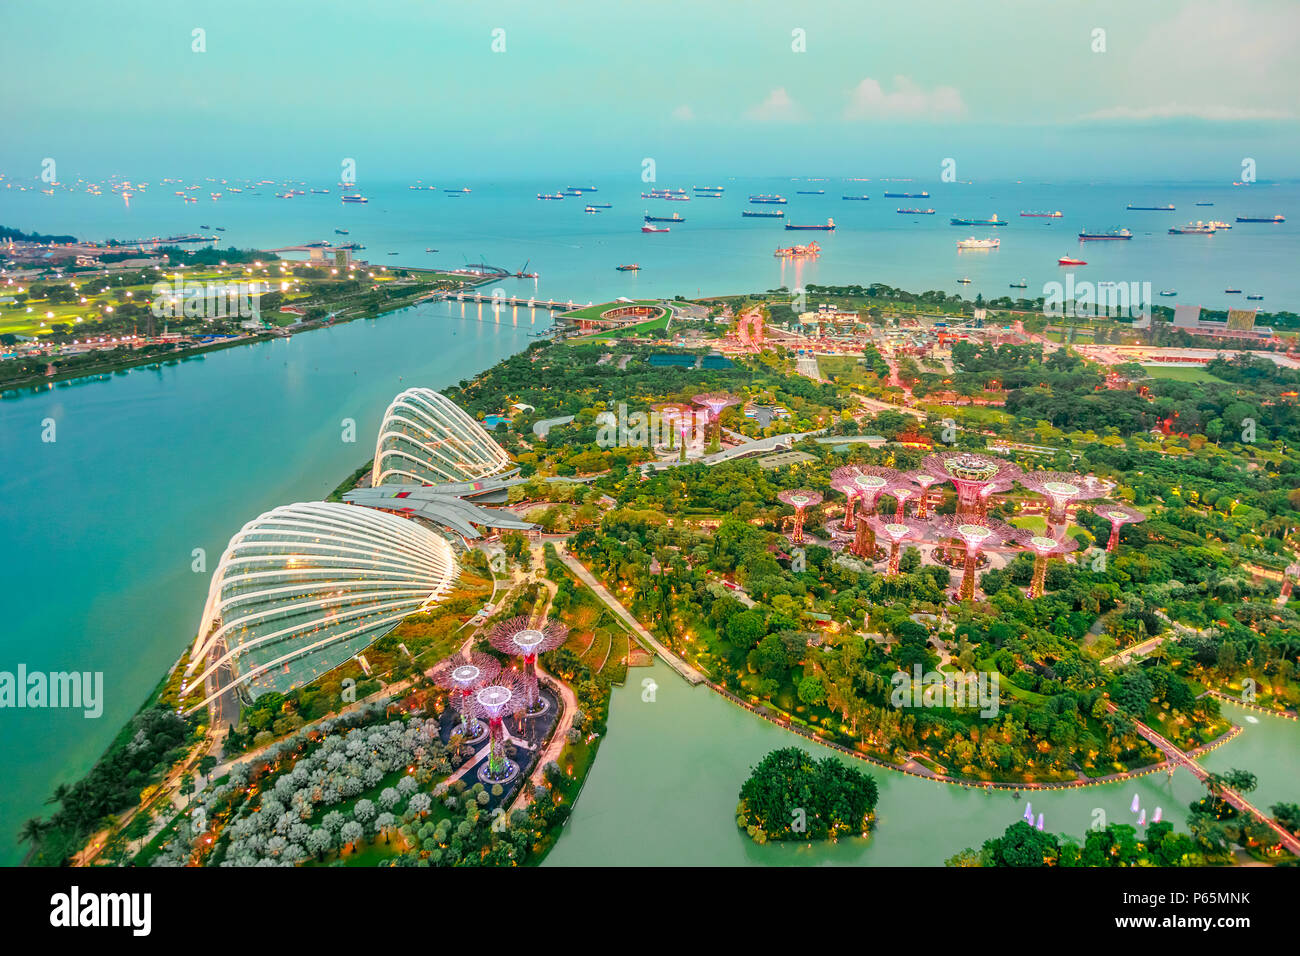 Vista aerea del paesaggio urbano Singapore e giardini dall'alloggiamento. Famosa attrazione turistica in area di Marina Bay, Singapore. Foto Stock